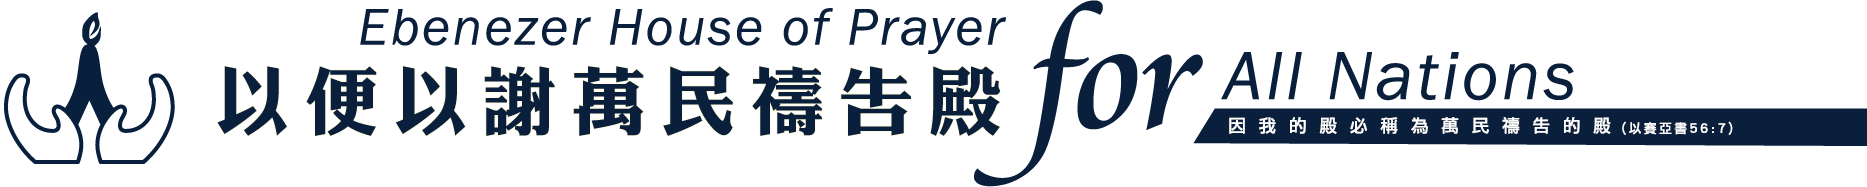 EHOPHK – Ebenezer House Of Prayer for All Nations (HK)